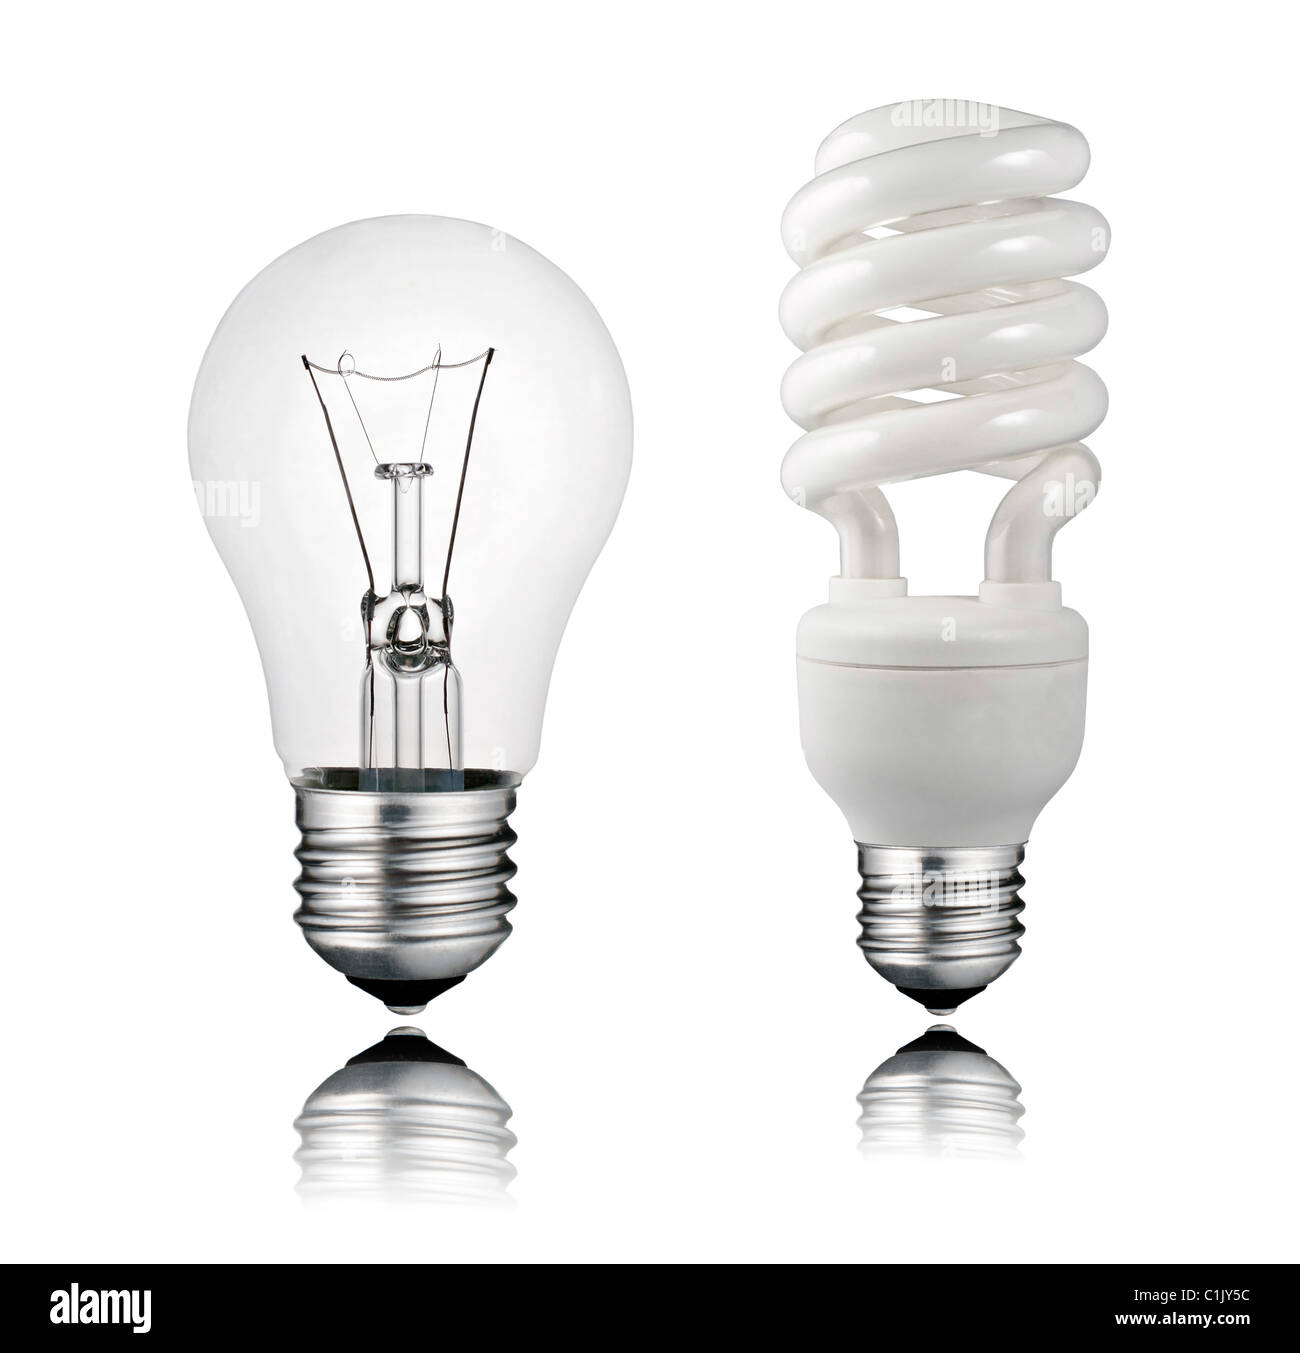 Perfekt Normal und Saver Glühbirne mit Reflexion, Isolated on White Background Stockfoto